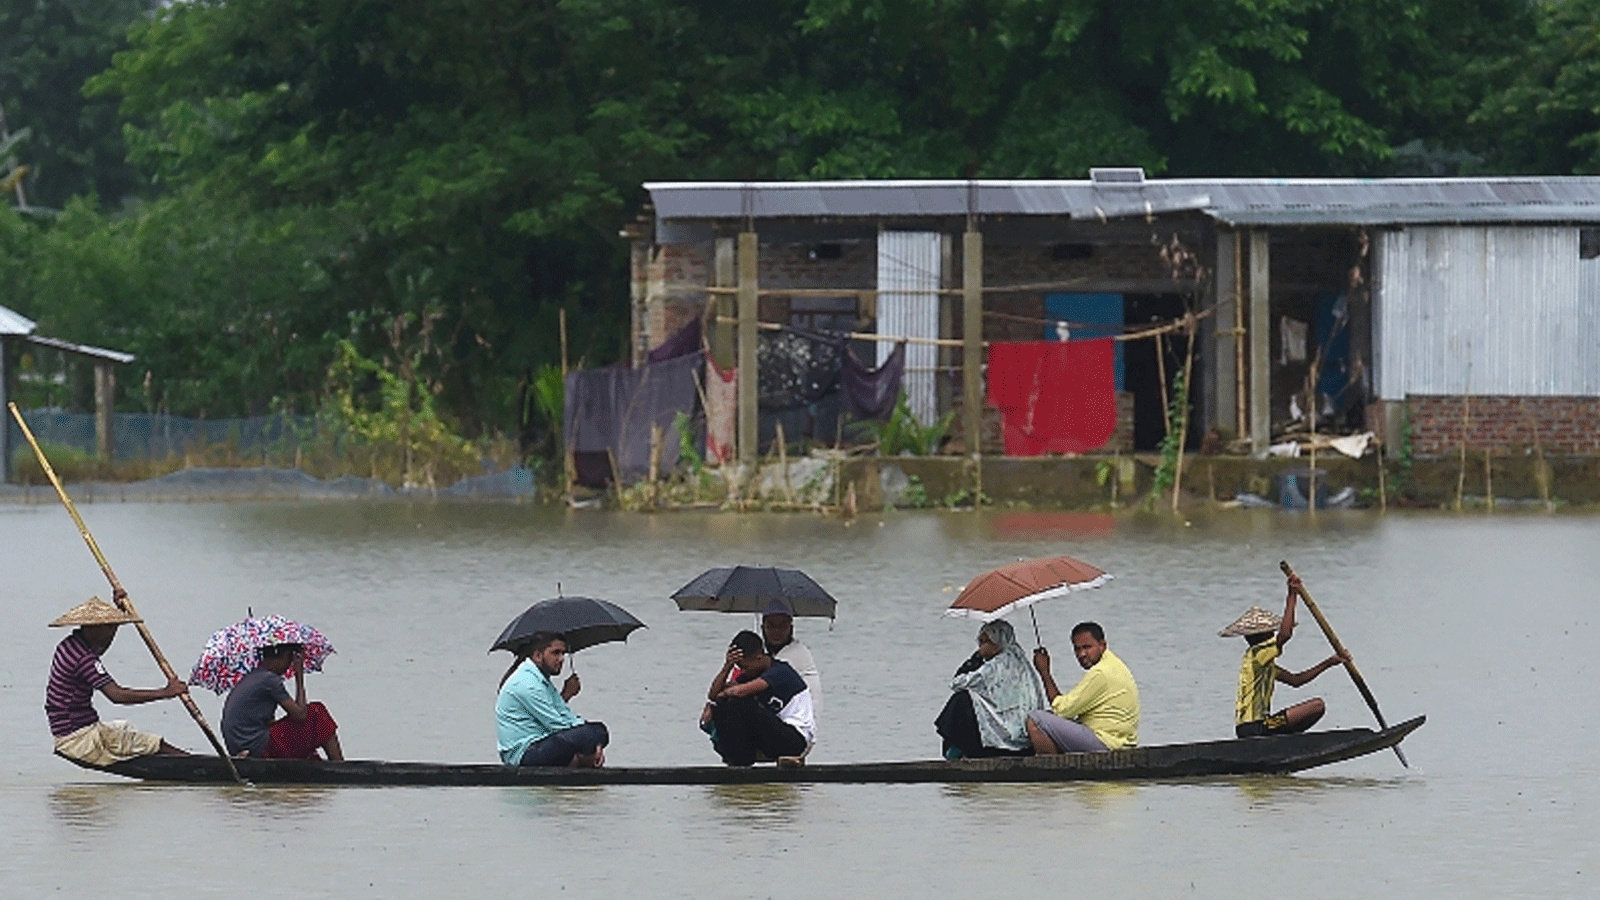  أشخاص يركبون قاربًا عبر المياه في أراضي غمرتها الفيضانات في سونامجونغ، بنغلاديش، 14 تموز/يوليو 2020